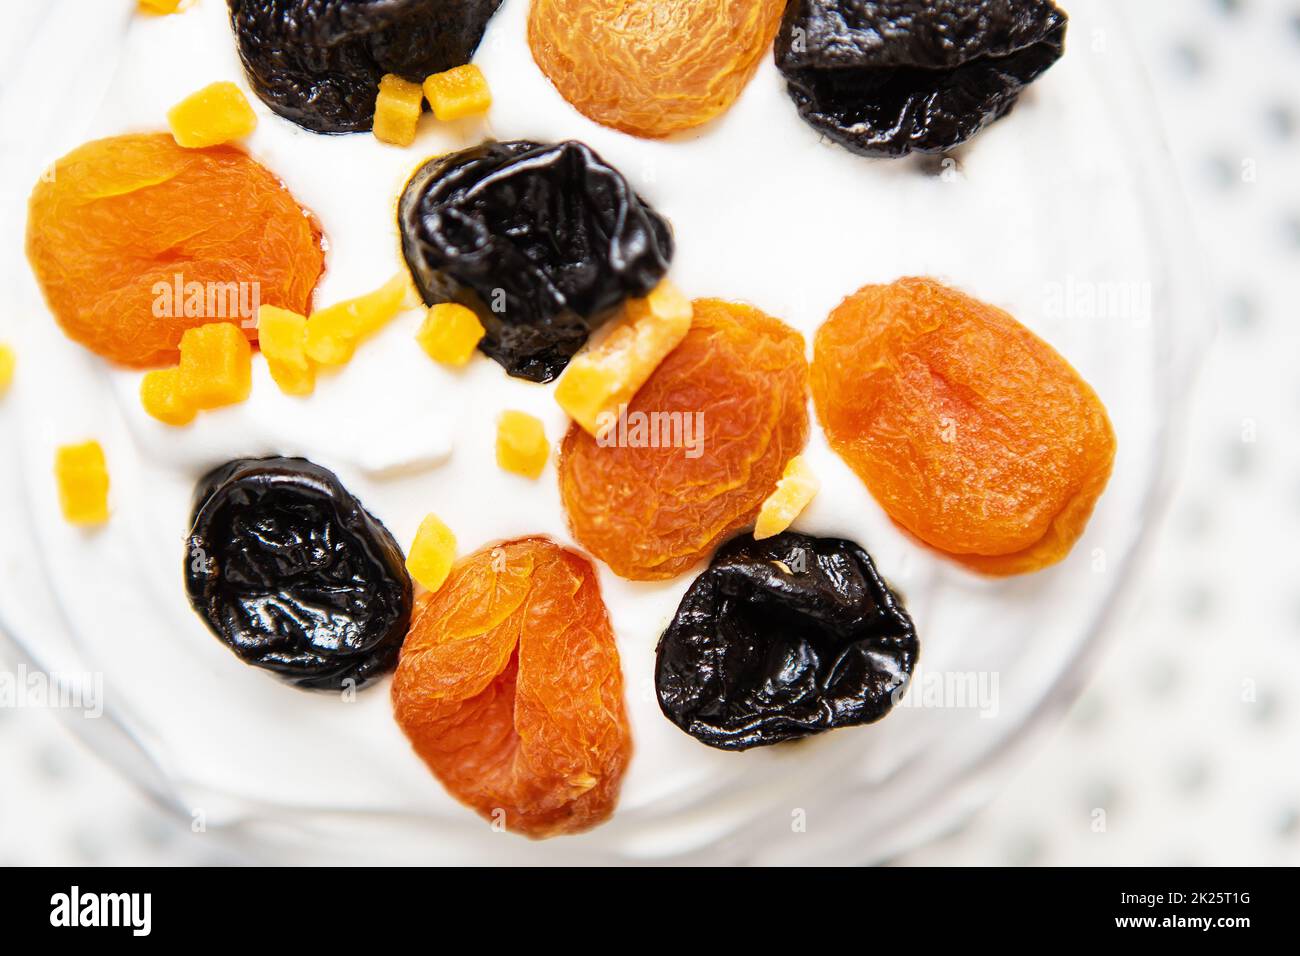 Un gâteau de Pâques décoré d'abricots et de pruneaux séchés se dresse sur un tablier bleu rayé. Concept de vacances religieuses de Pâques. Banque D'Images